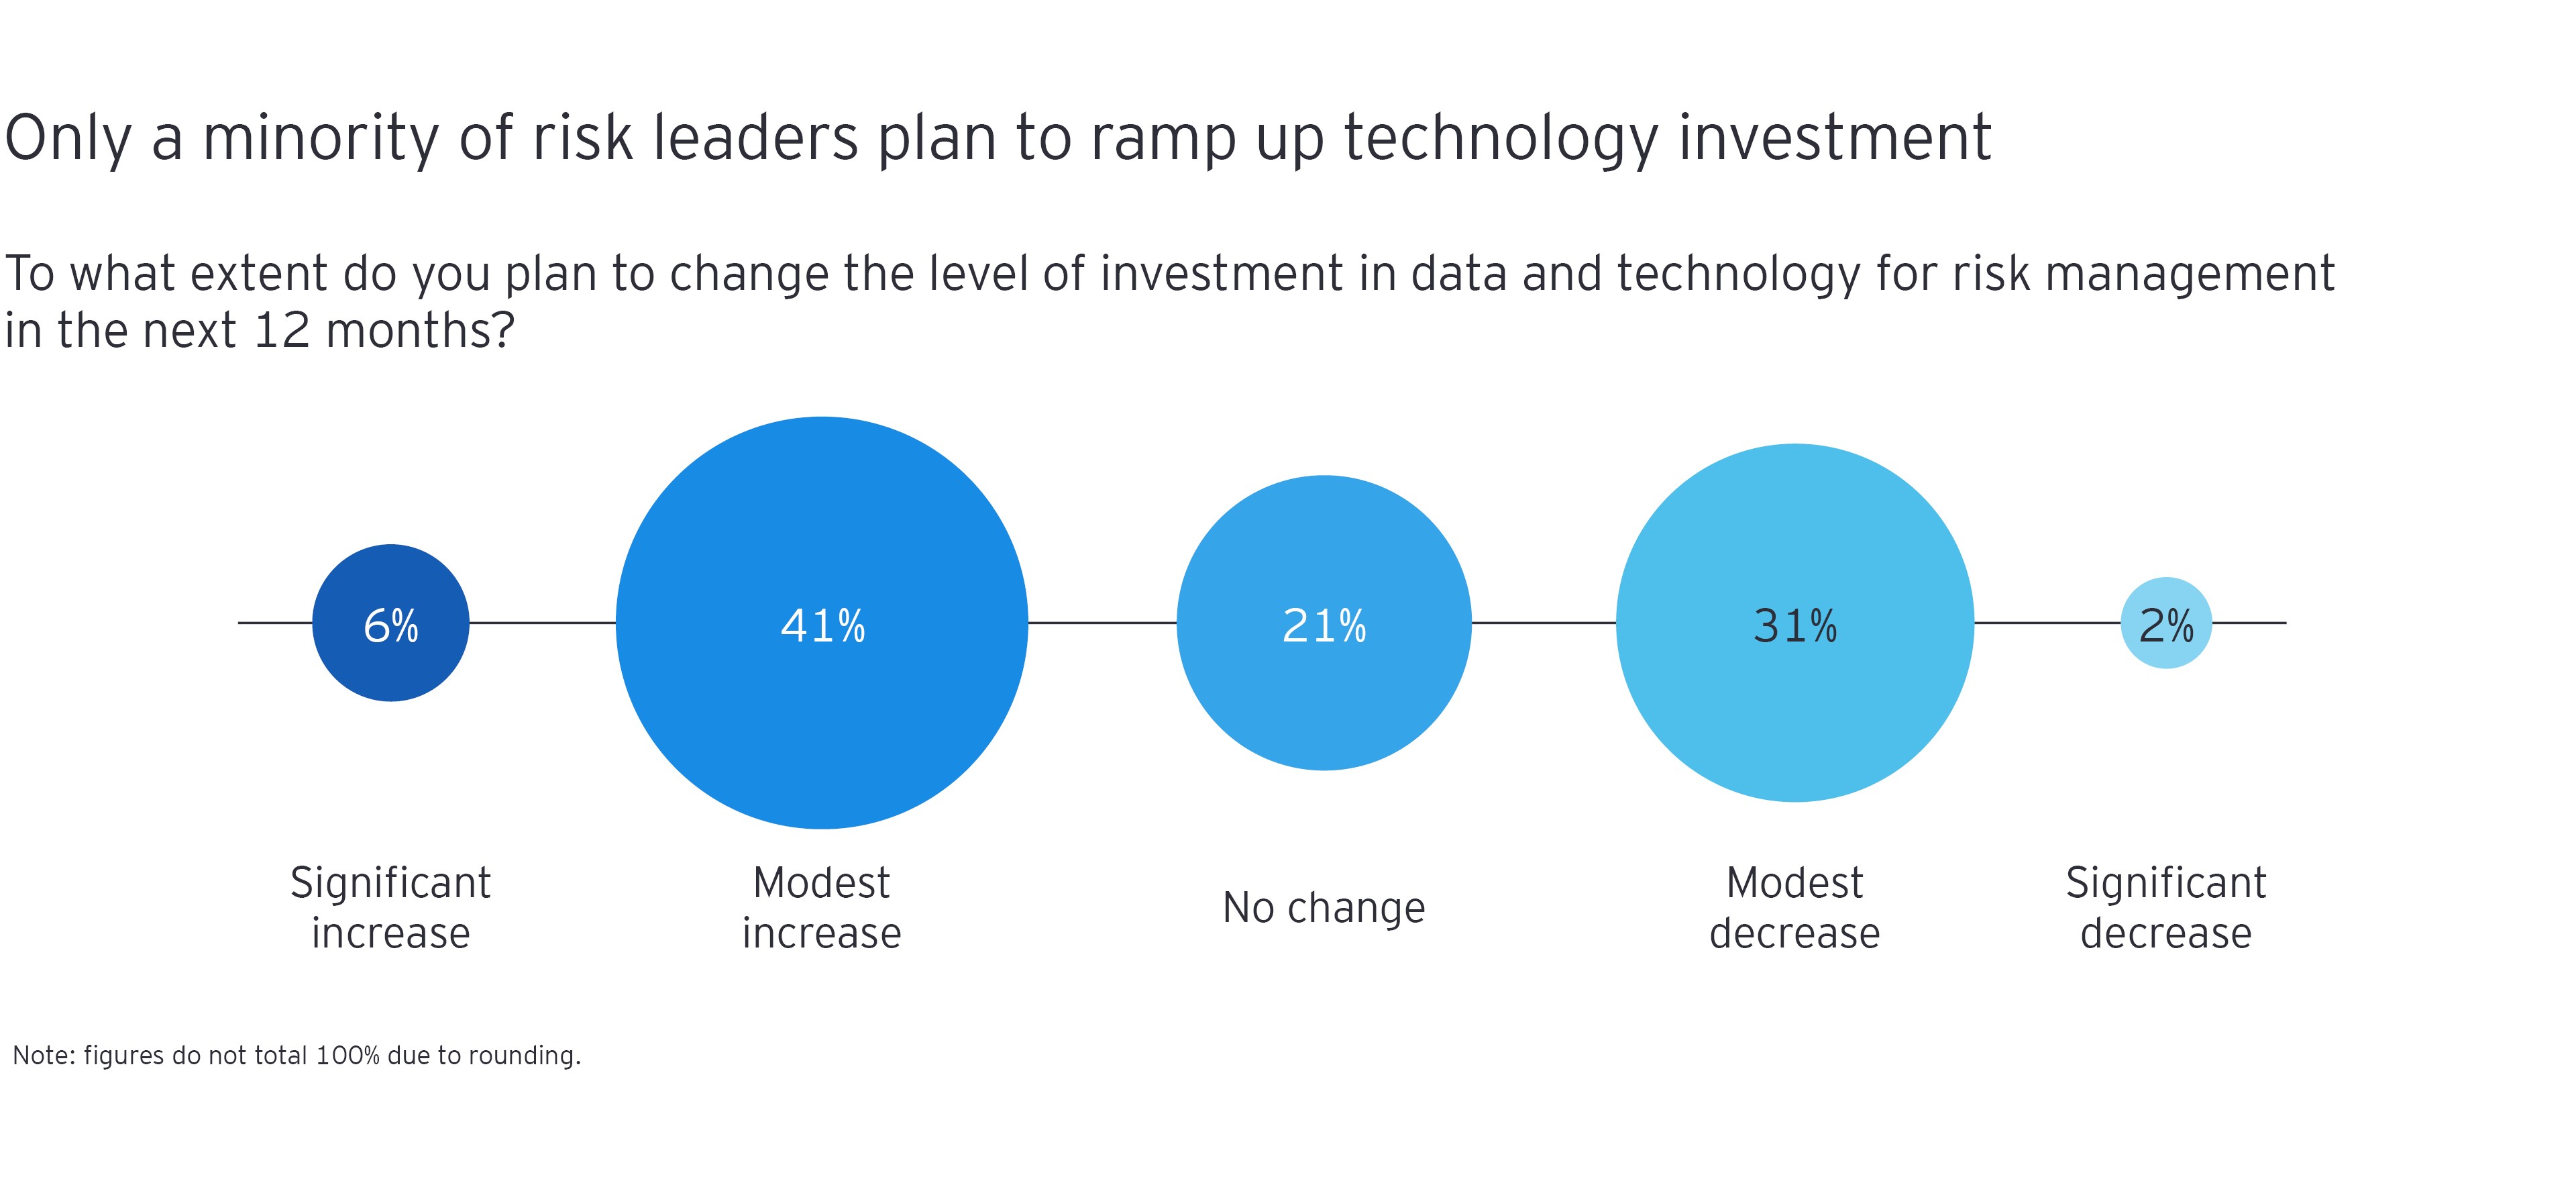 Gráfico desglosando las respuestas de la encuesta por porcentaje a "¿En qué medida planea cambiar el nivel de inversión en datos y tecnología para la gestión de riesgos en los próximos 12 meses?"